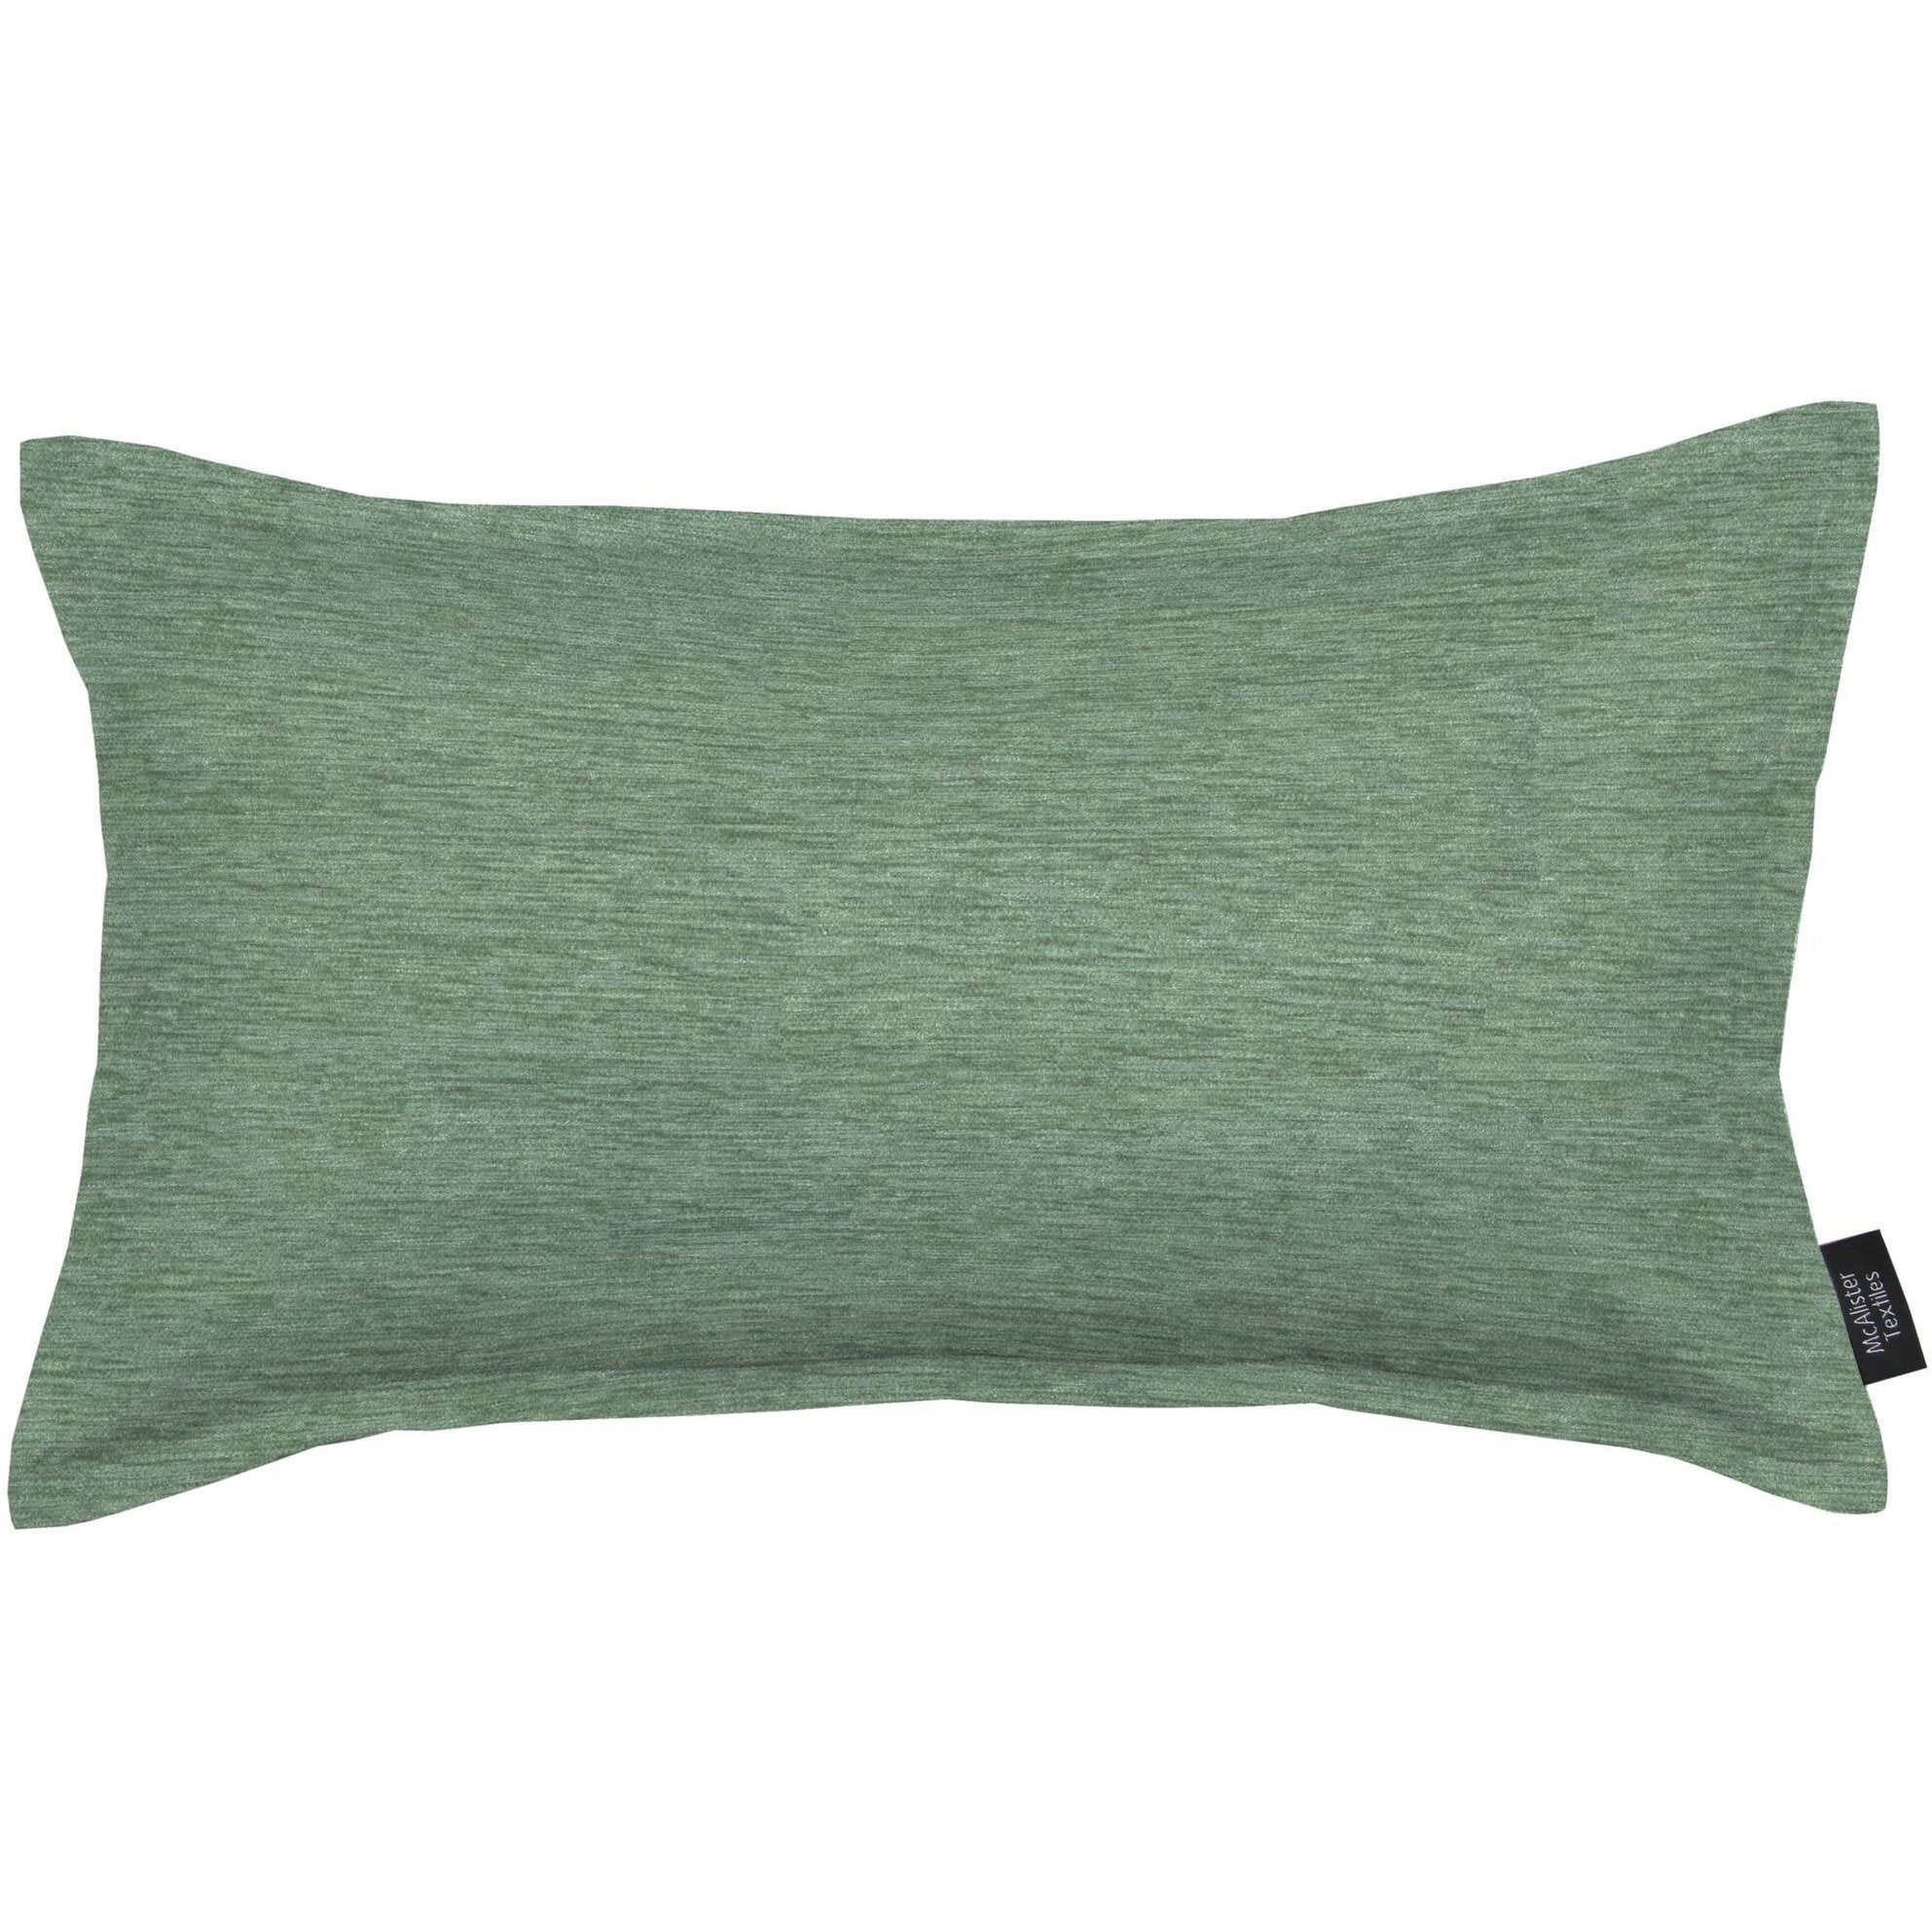 McAlister Textiles Plain Chenille Duck Egg Blue Pillow Pillow Cover Only 50cm x 30cm 